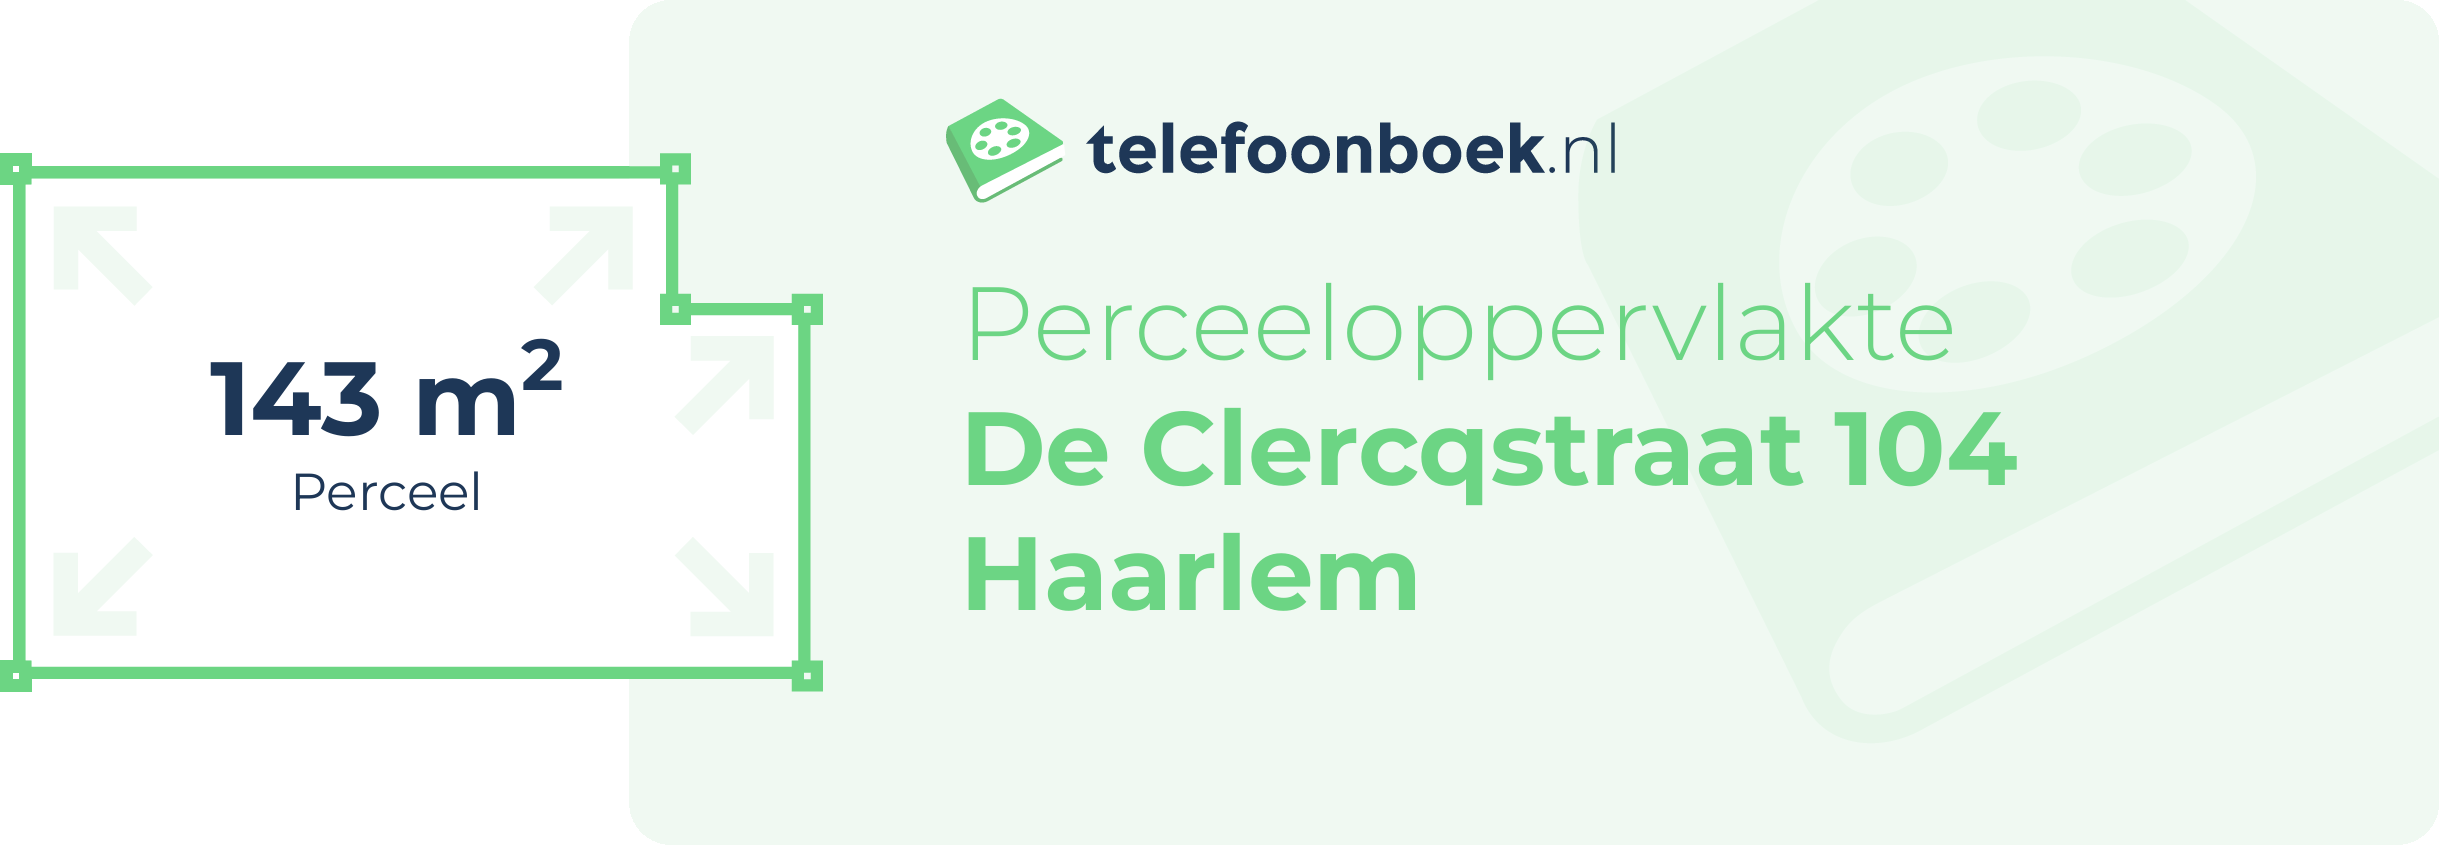 Perceeloppervlakte De Clercqstraat 104 Haarlem